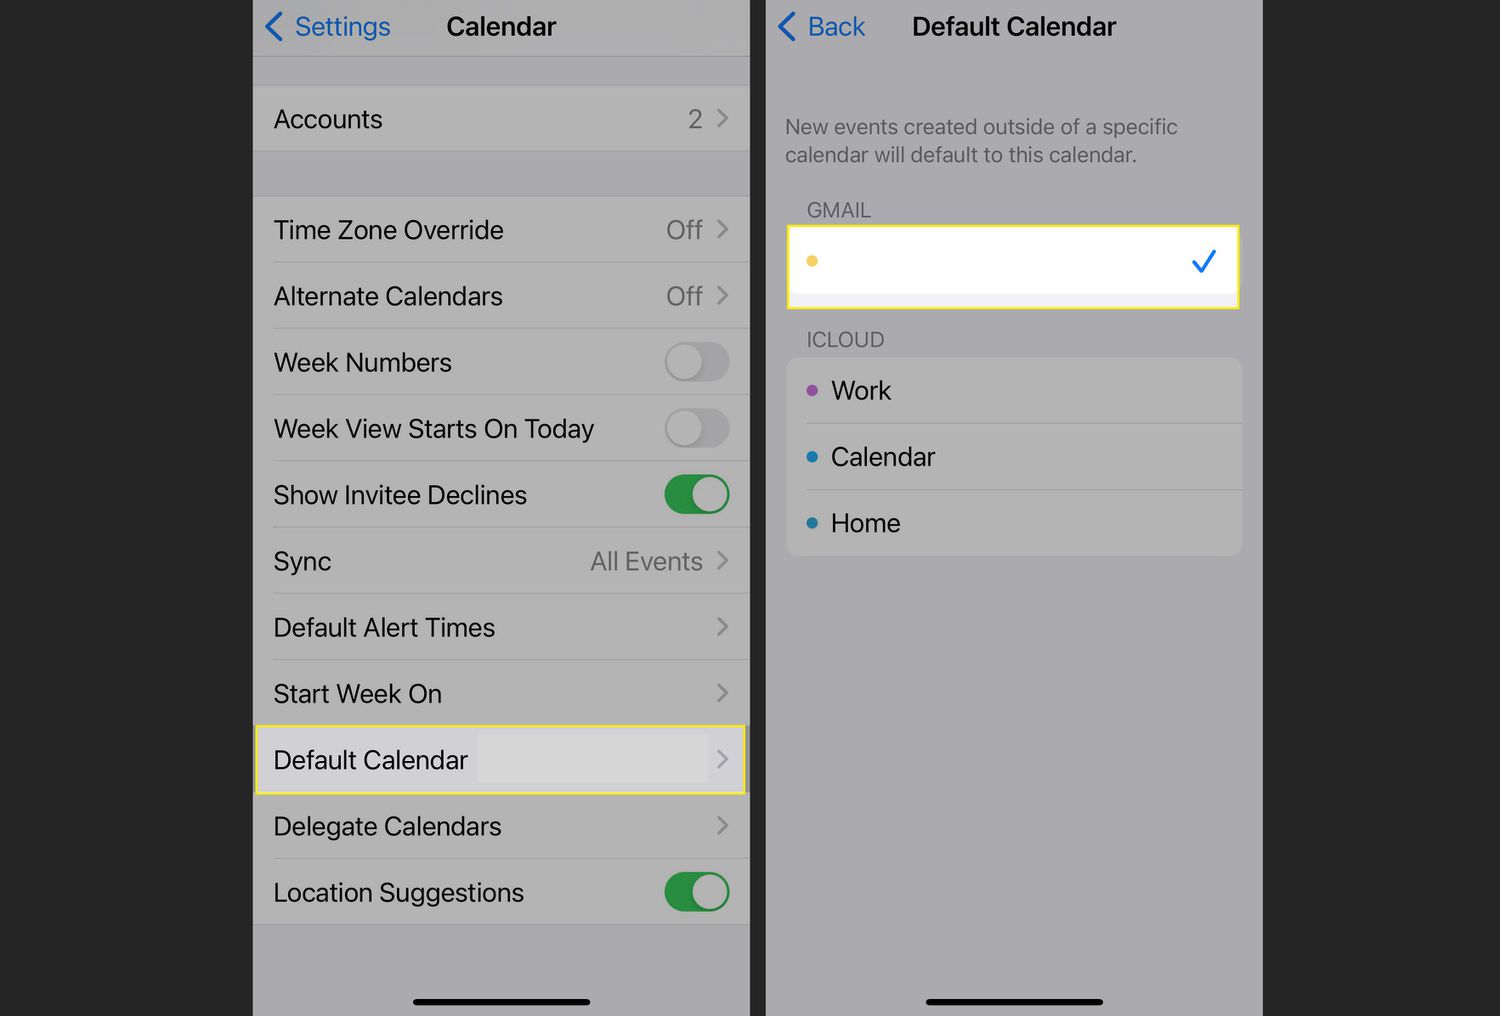 Configurações do calendário do iPhone com calendário padrão e definir novo calendário realçado